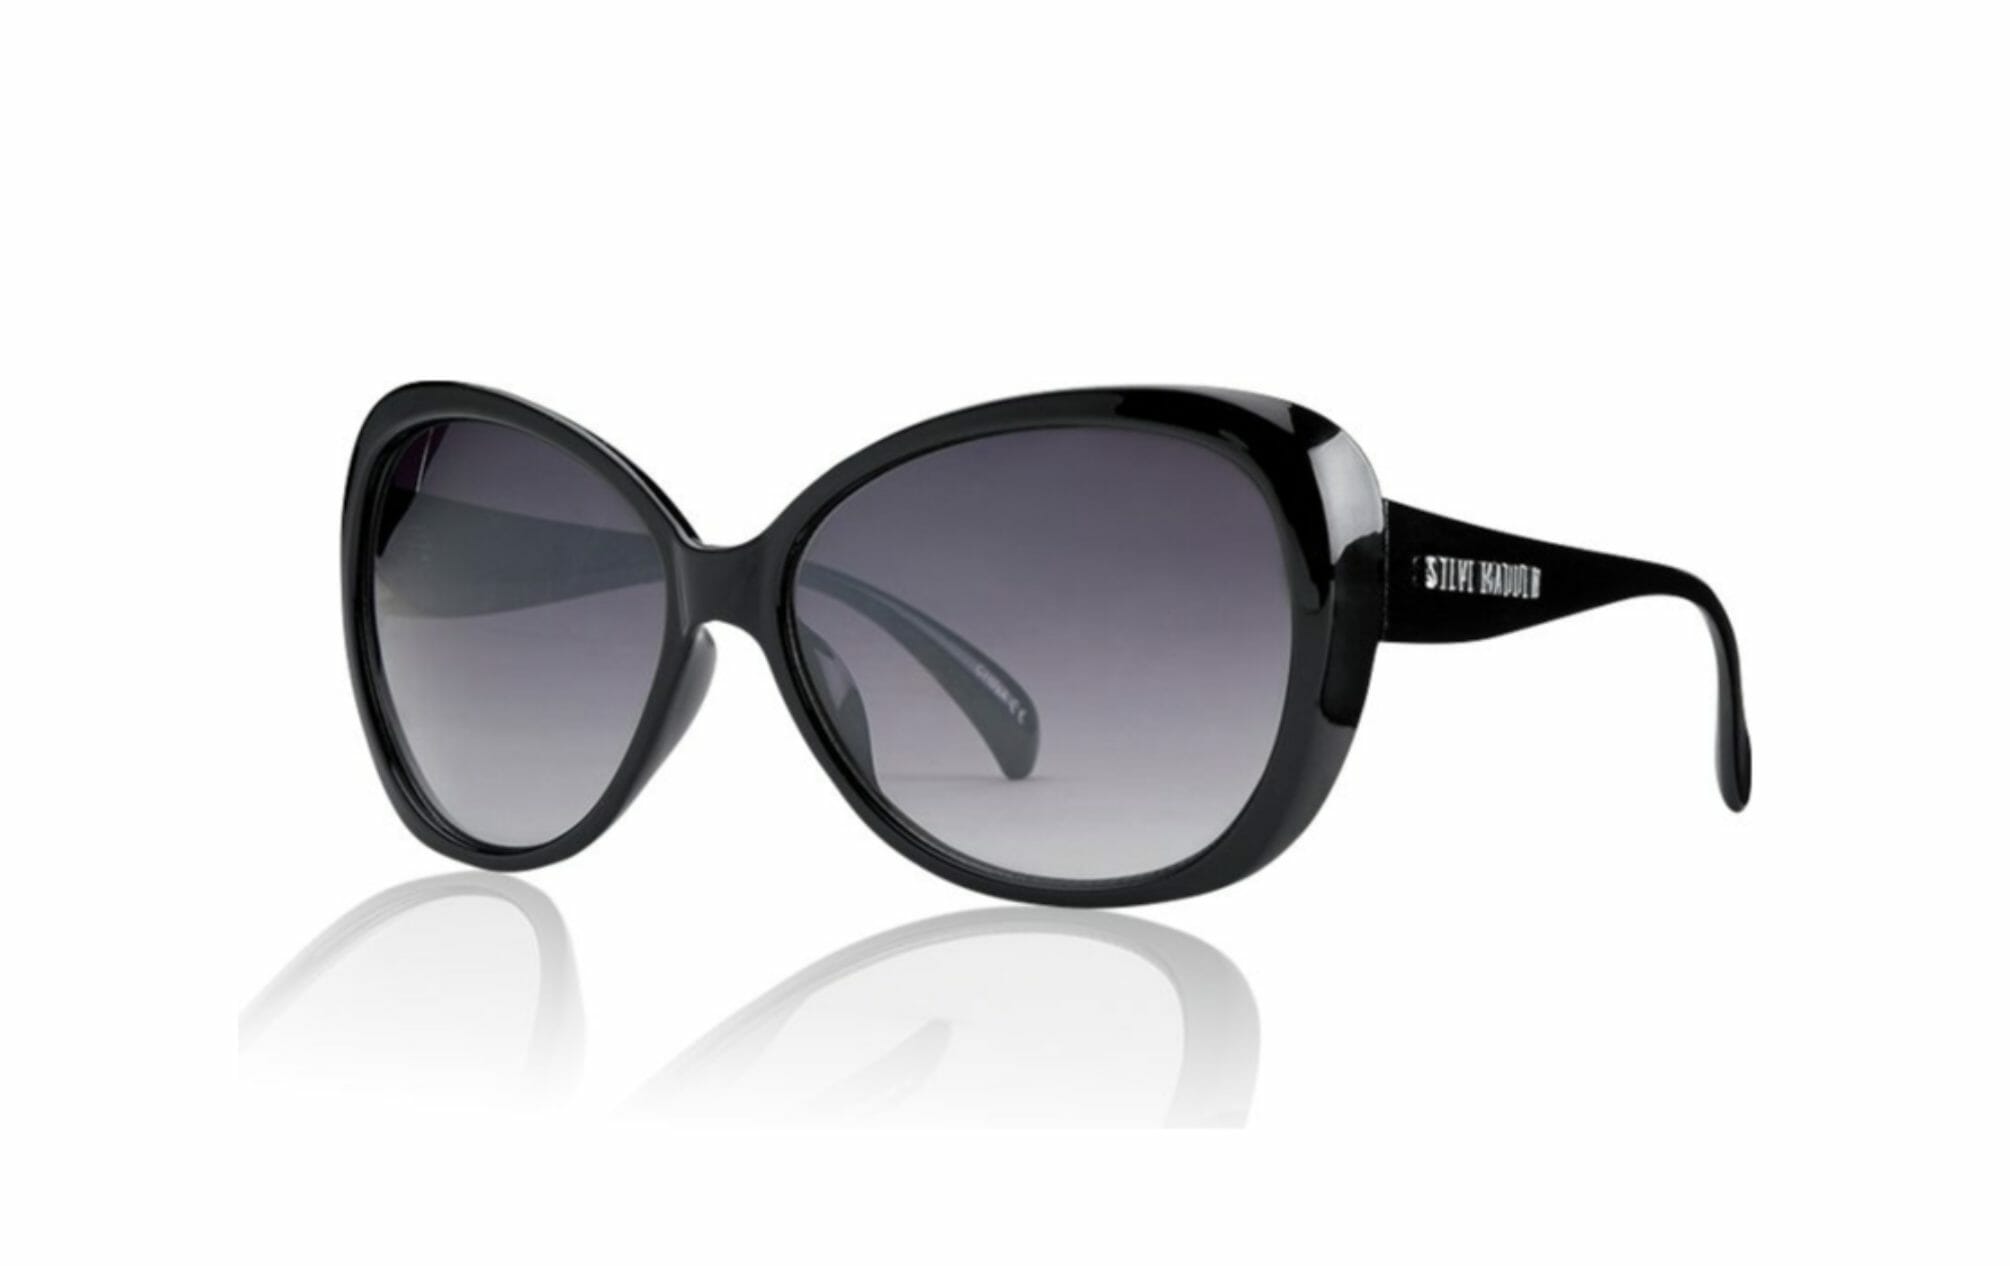 Women's black sunglasses with gray lenses by Steve Harvey.